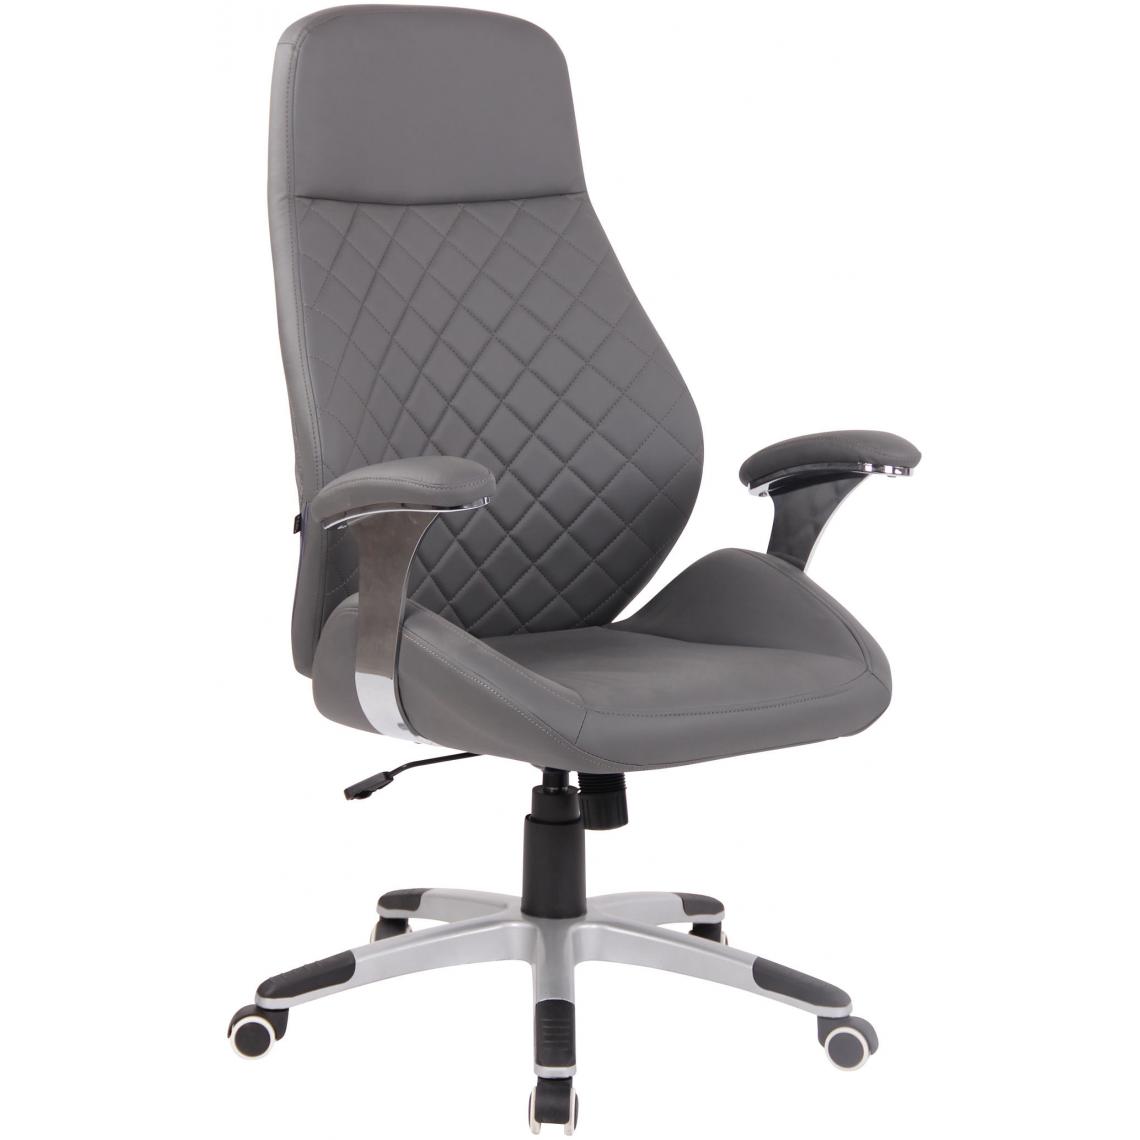 Icaverne - Contemporain Chaise de bureau en similicuir reference Tbilissi couleur gris - Chaises